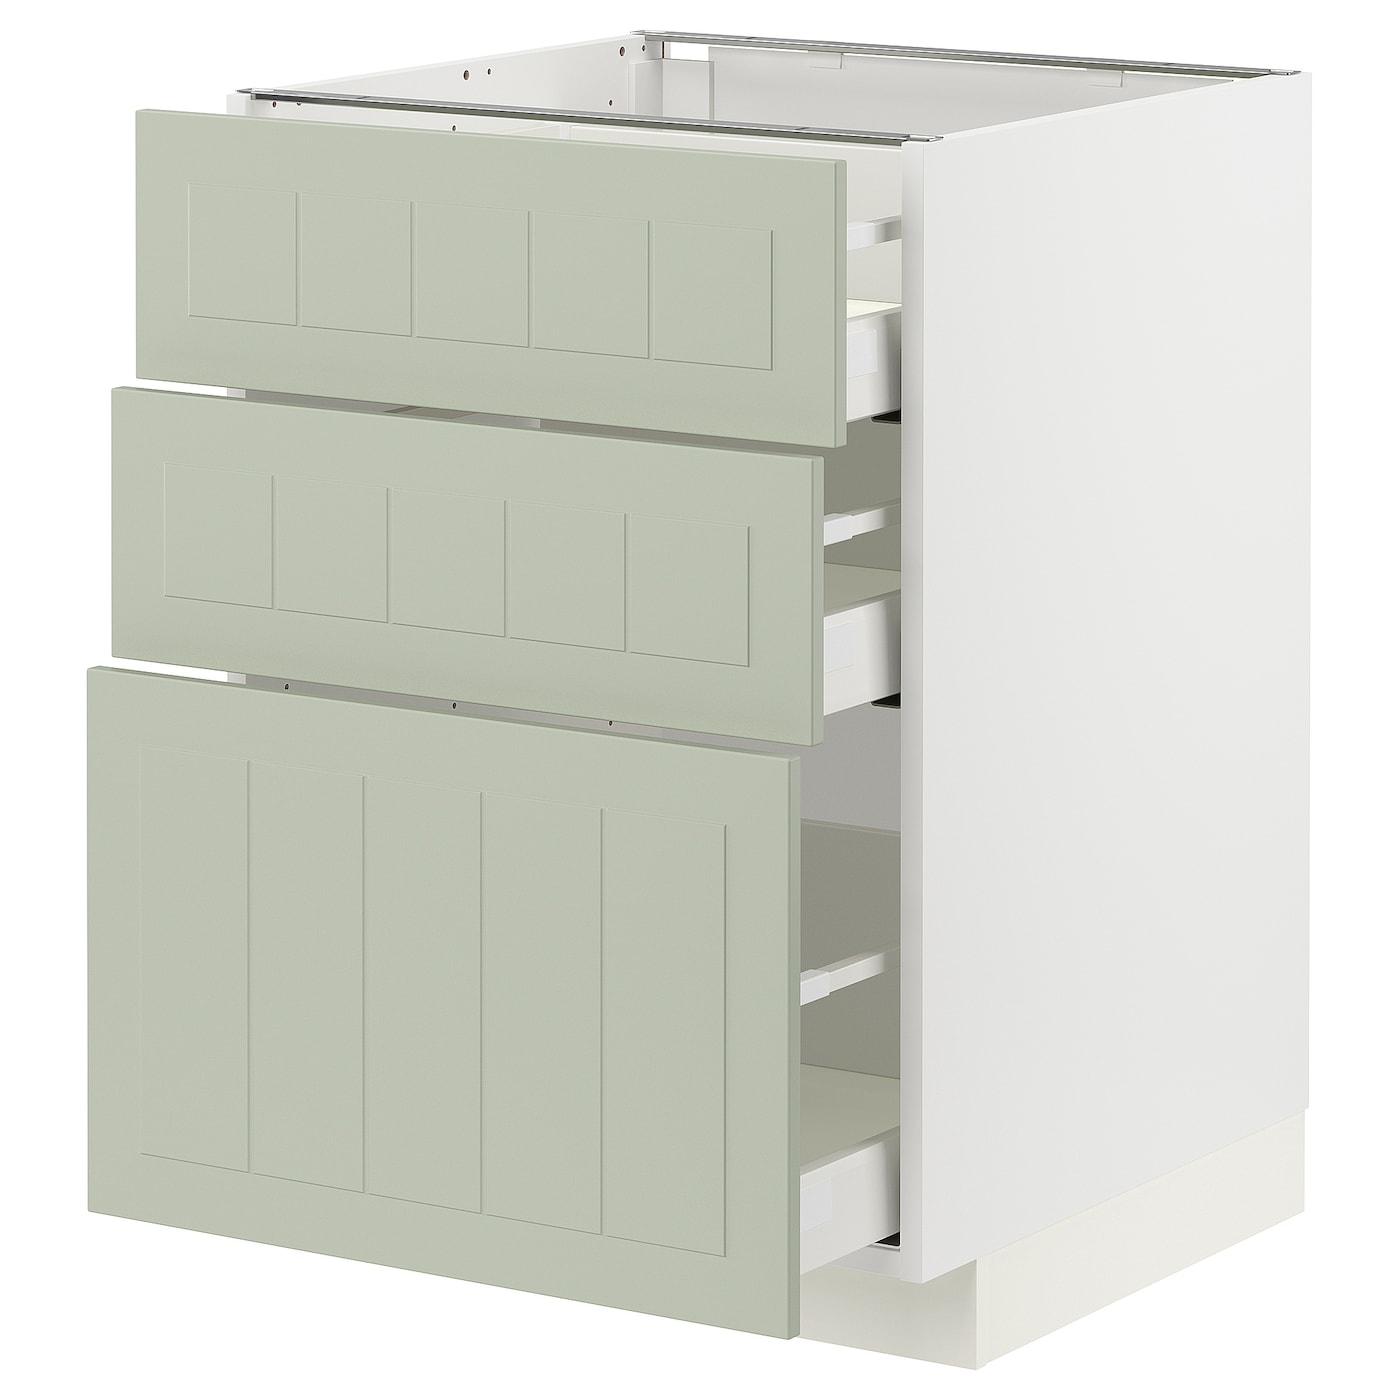 Напольный шкаф - METOD / MAXIMERA IKEA/ МЕТОД/ МАКСИМЕРА ИКЕА,  88х60 см, белый/светло-зеленый